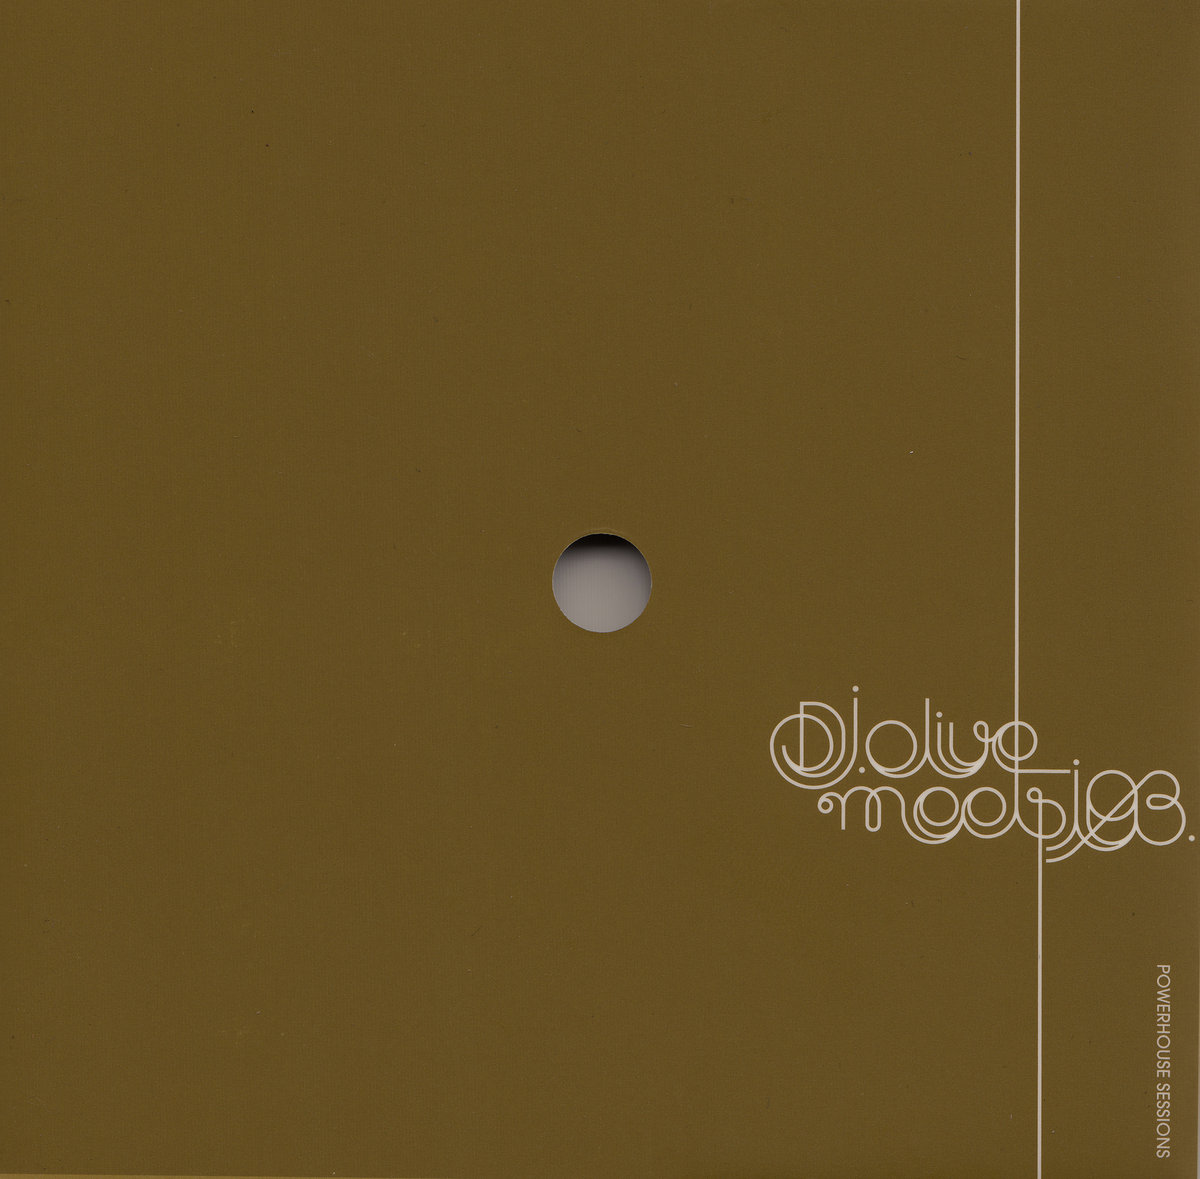 dj-olive-meets-i-03-cover